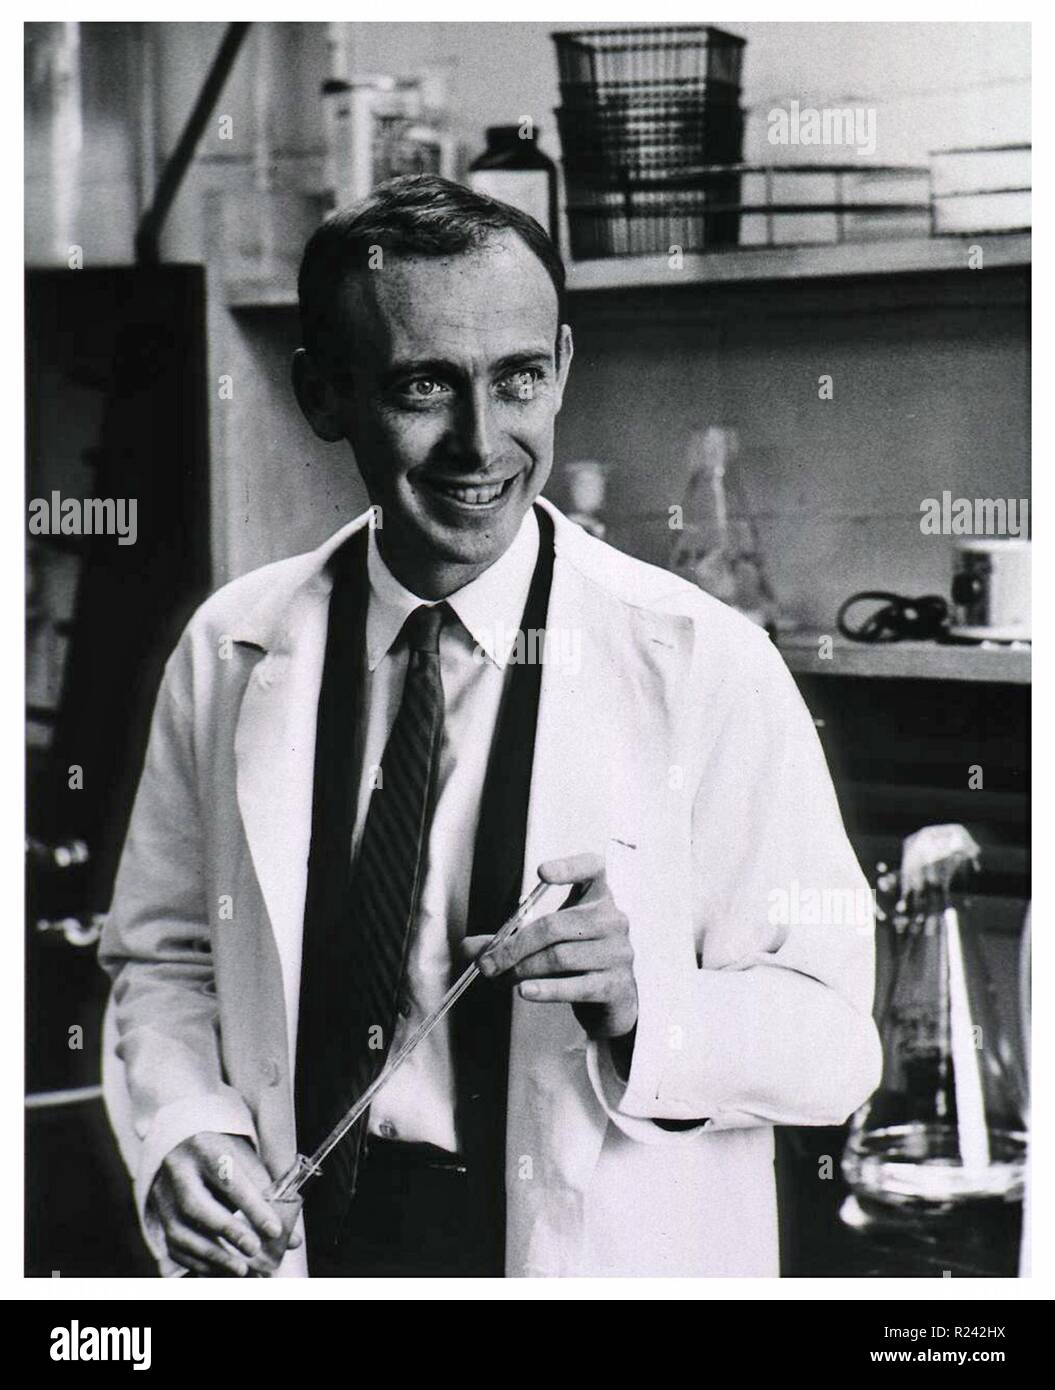 Fotografia di James Watson (1928-) un americano biologo molecolare, genetista e zoologo, meglio conosciuto come uno dei co-scopritori della struttura del DNA nel 1953 con Francis Crick. Datata 1953 Foto Stock